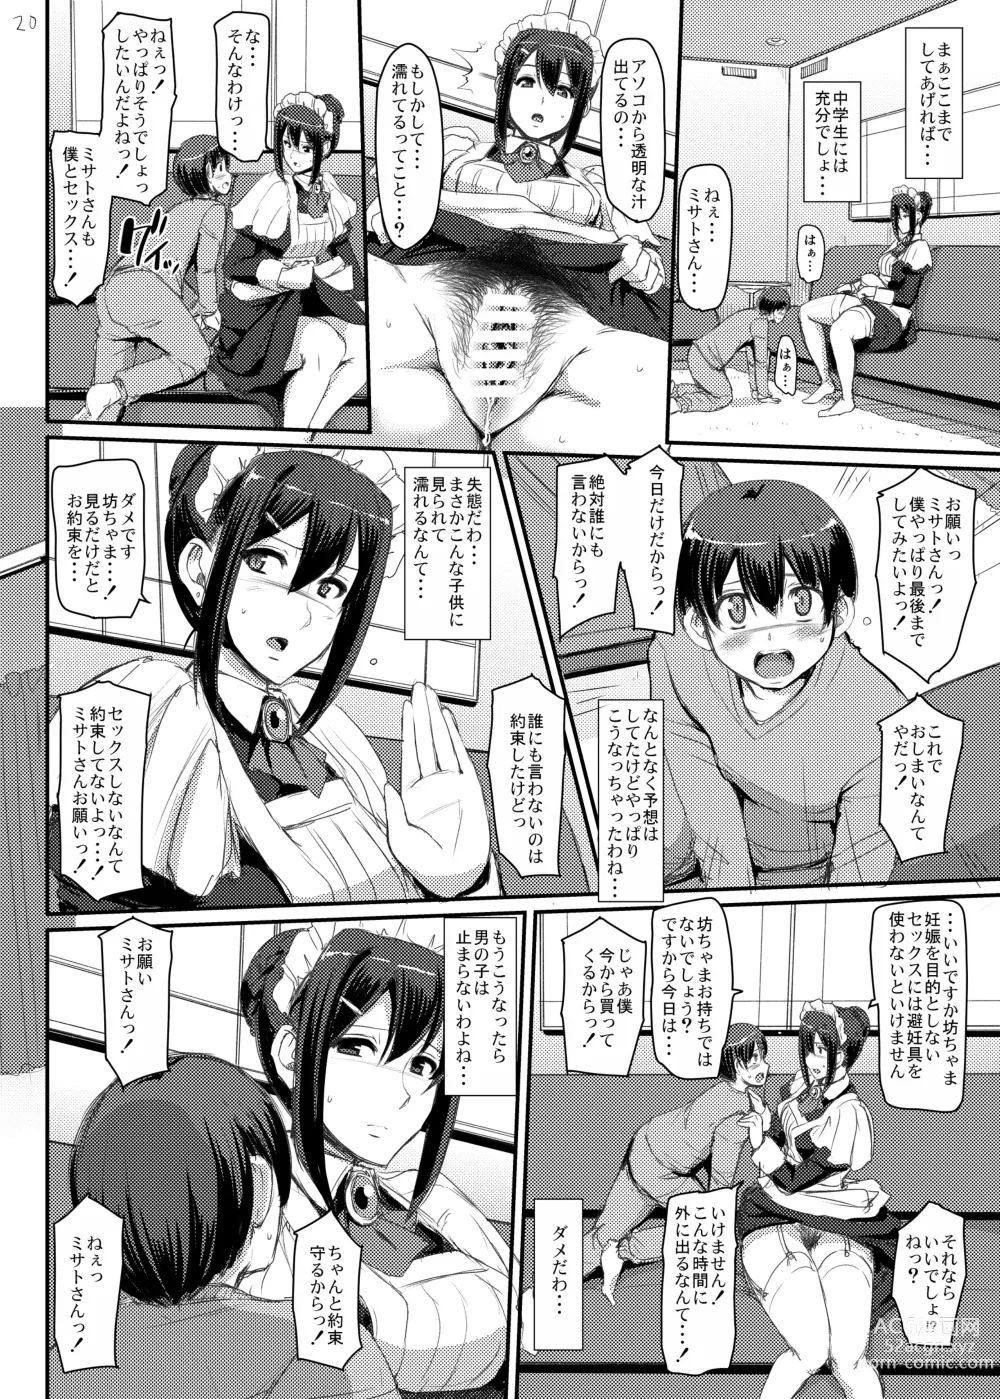 Page 21 of doujinshi Maid no Oshigoto.